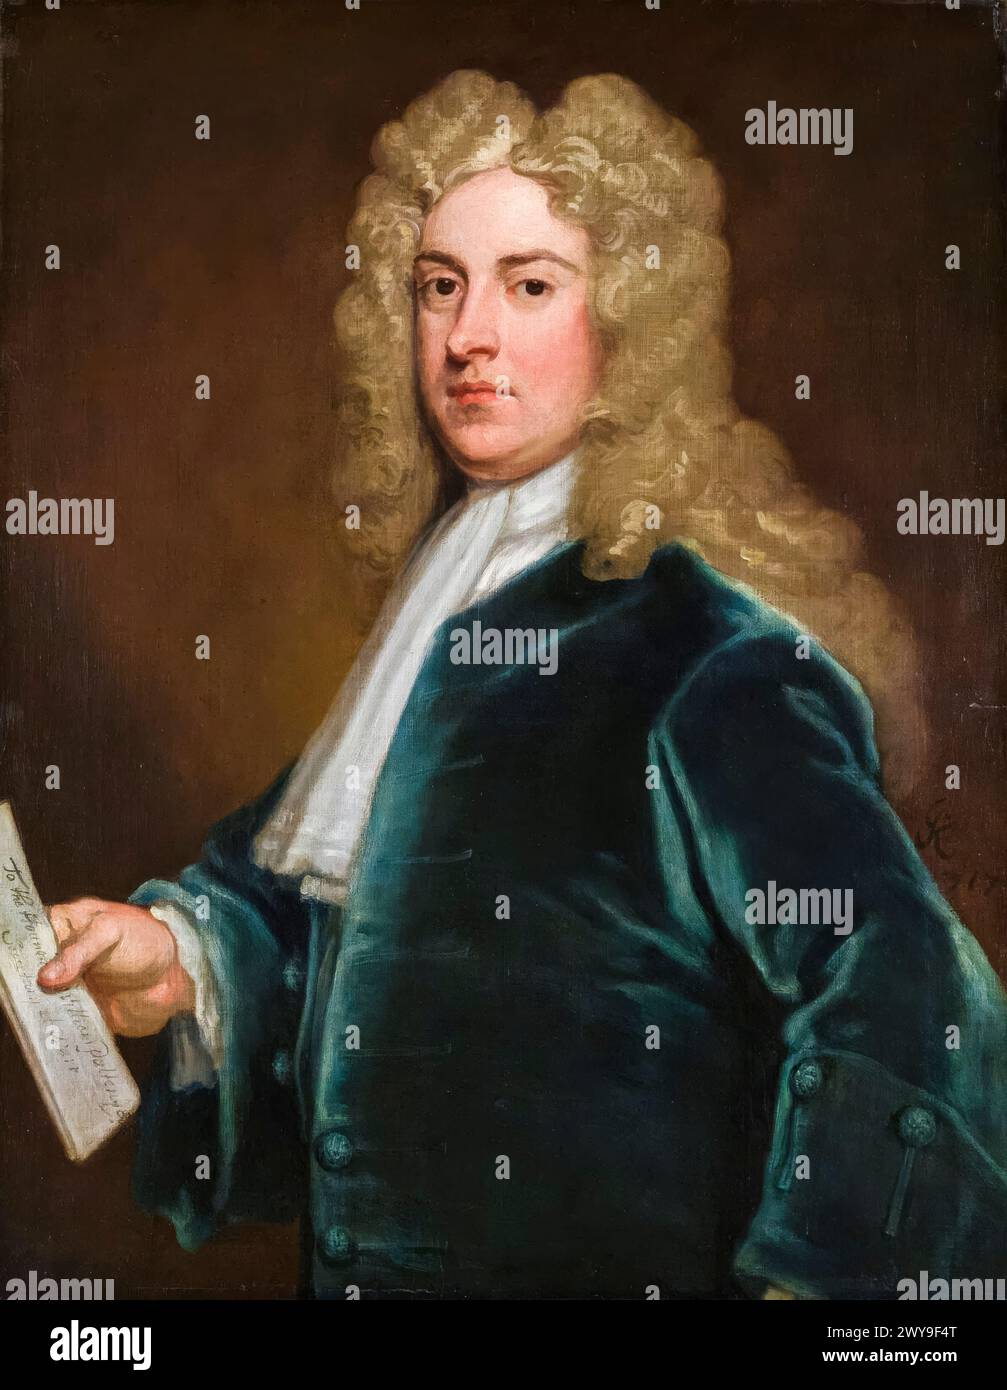 William Pulteney, i conte di Bath (1684-1764), politico Whig e contestato primo ministro della Gran Bretagna 10-12 febbraio 1746, ritratto a olio su tela di Sir Godfrey Kneller, 1717 Foto Stock